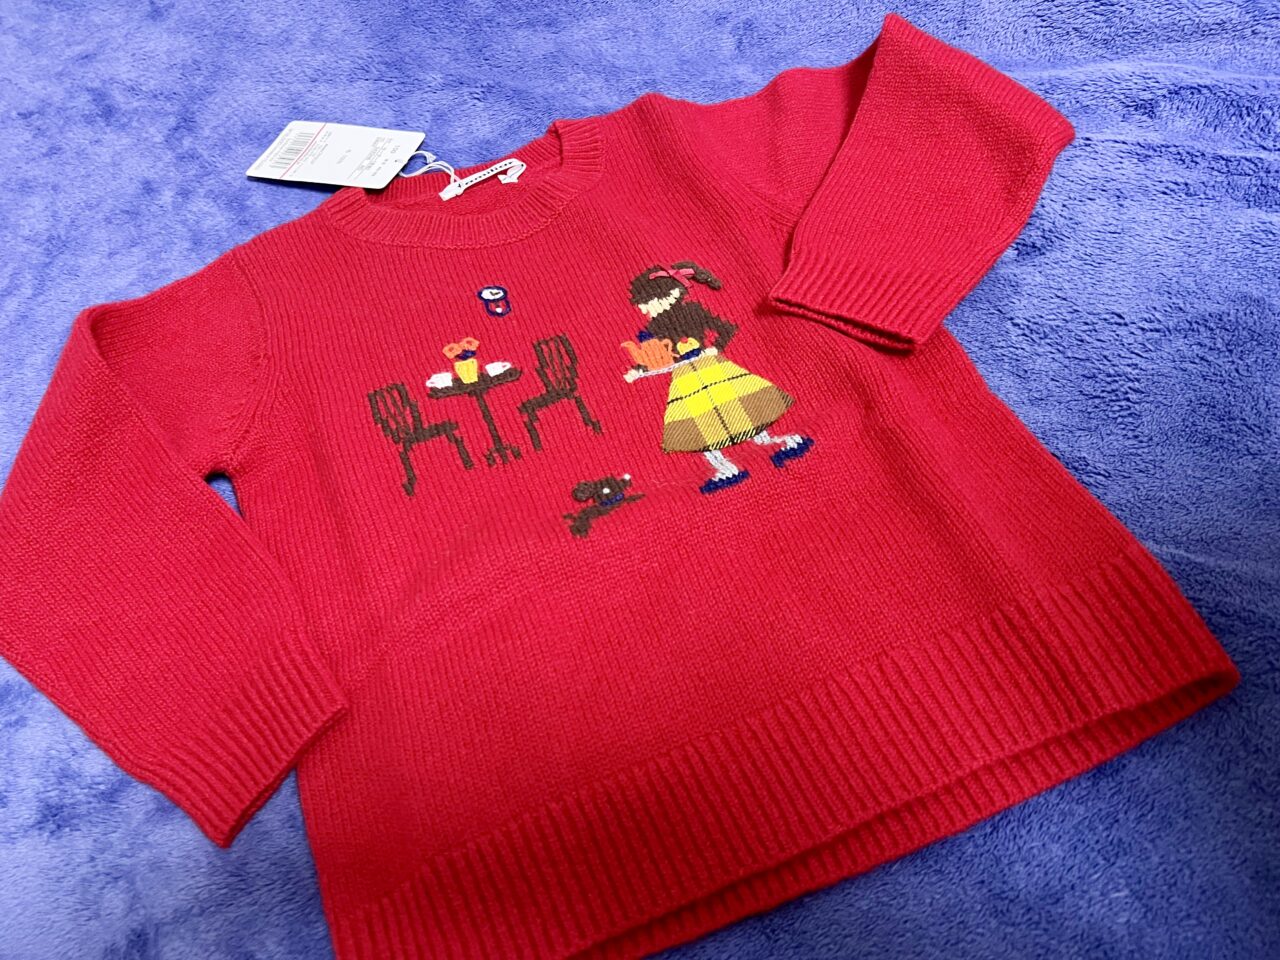 ファミリアオンラインセールで購入した女の子の柄のセーターです。